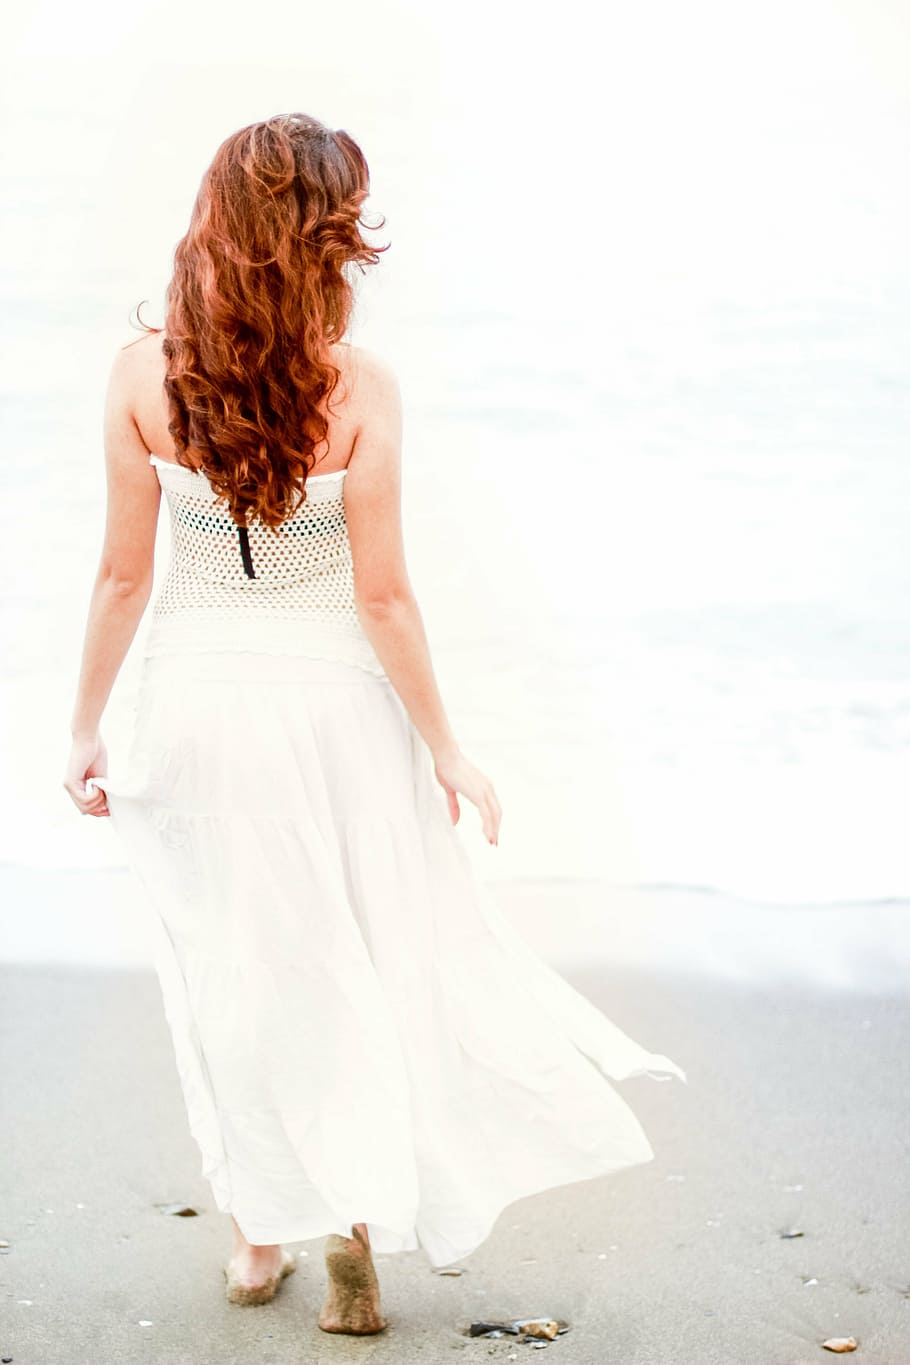 woman, standing, seashore, looking, calm, sea, ocean, water, waves, nature